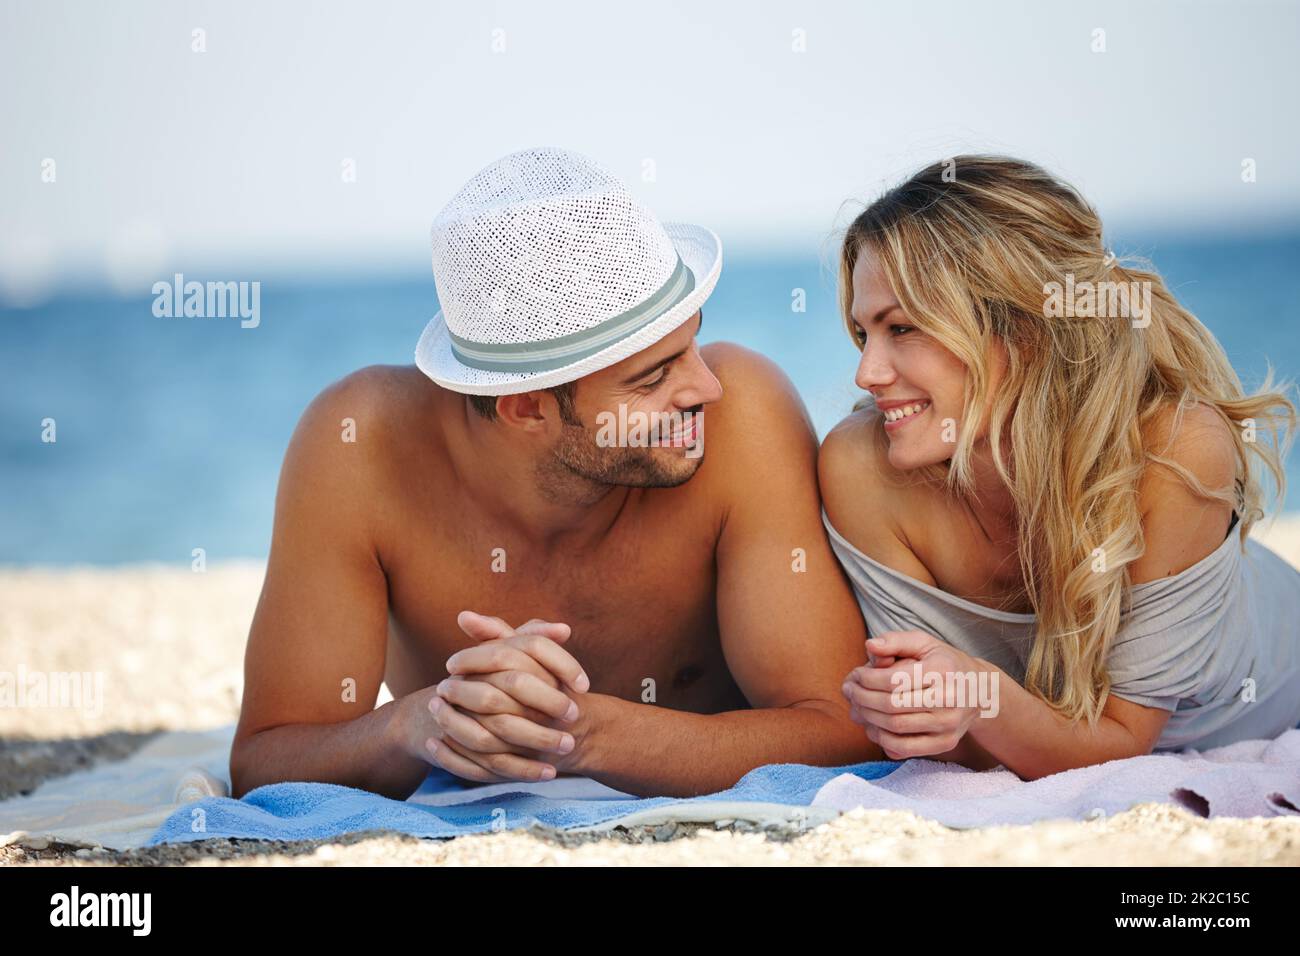 Romantik im Urlaub. Aufnahme eines glücklichen jungen Paares, das am Strand liegt. Stockfoto